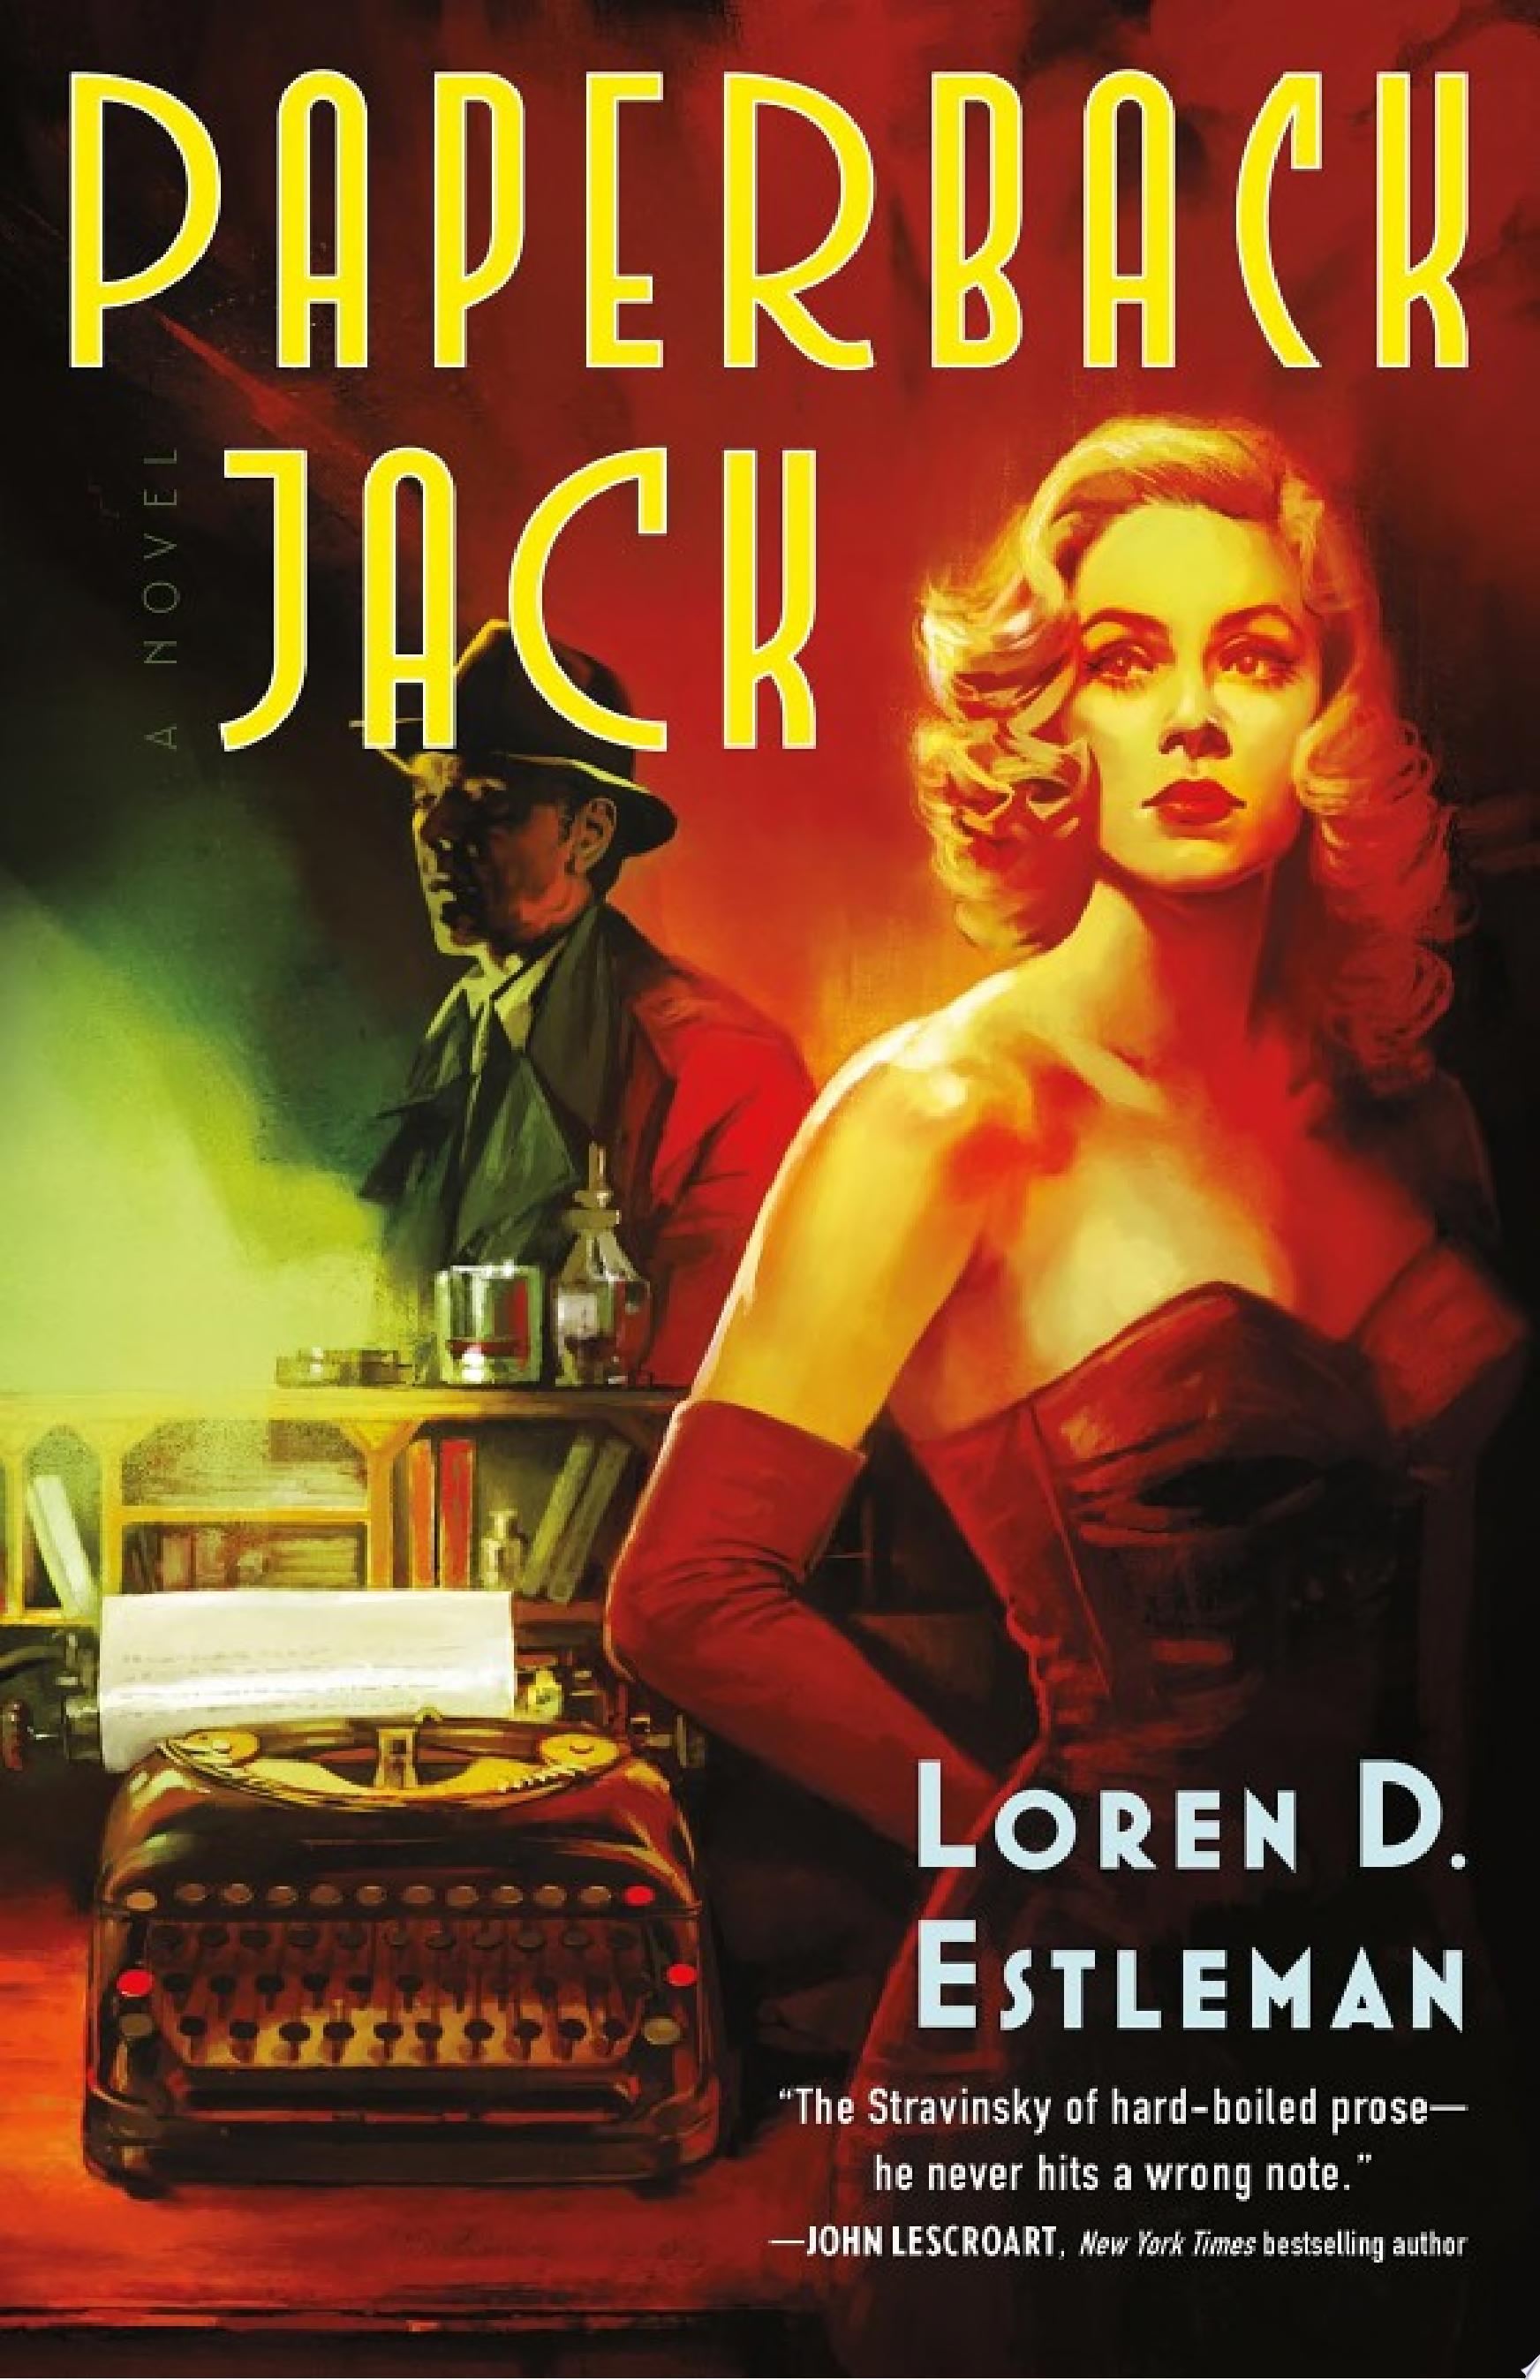 Image for "Paperback Jack"